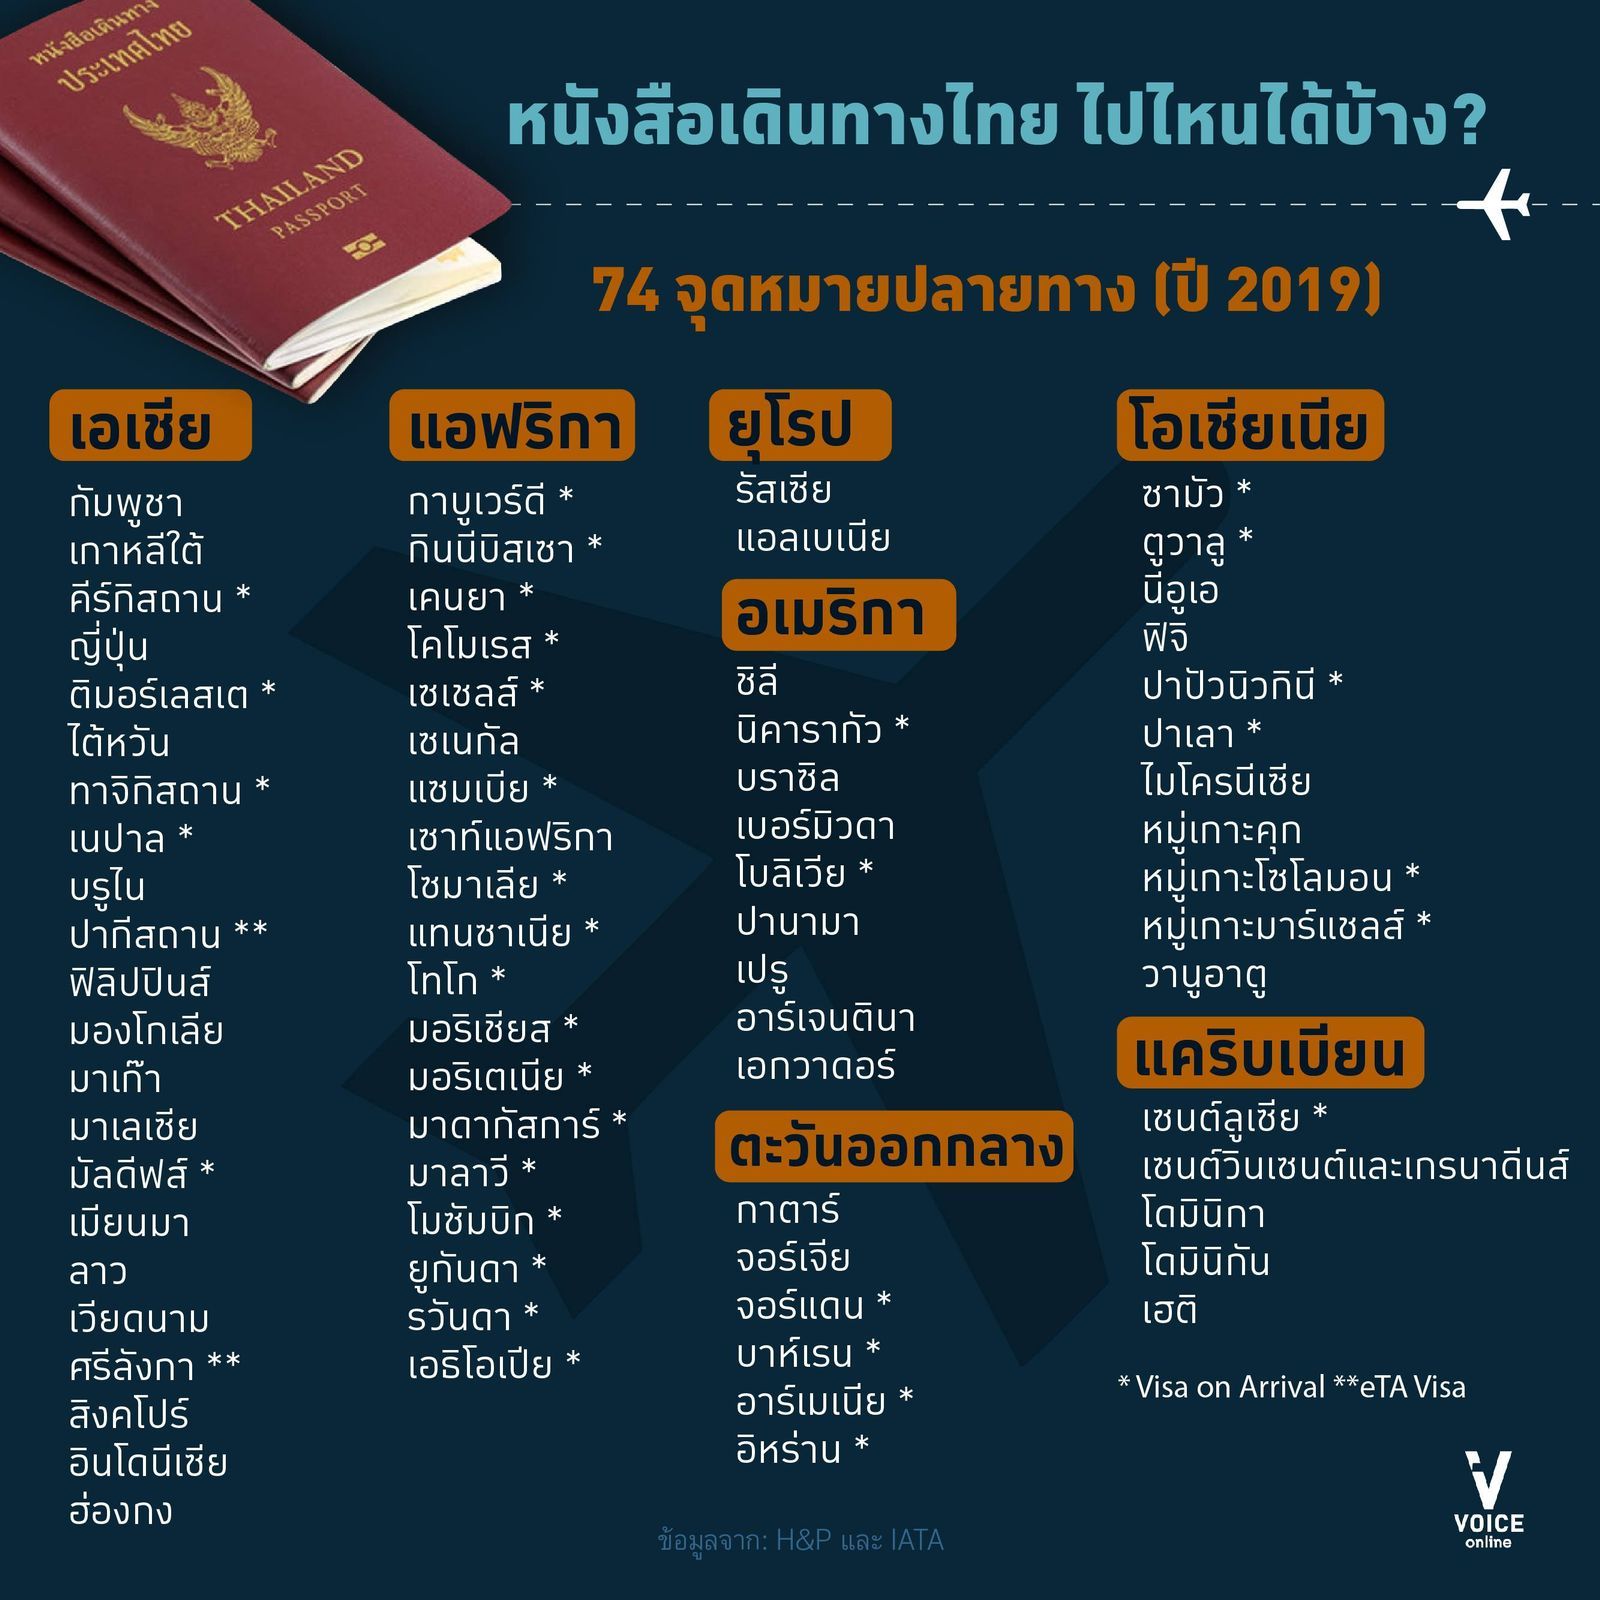 graphic-ดัชนีพาสปอร์ตเฮนลีย์-พาสปอร์ตไทยไปไหนได้บ้าง 2019